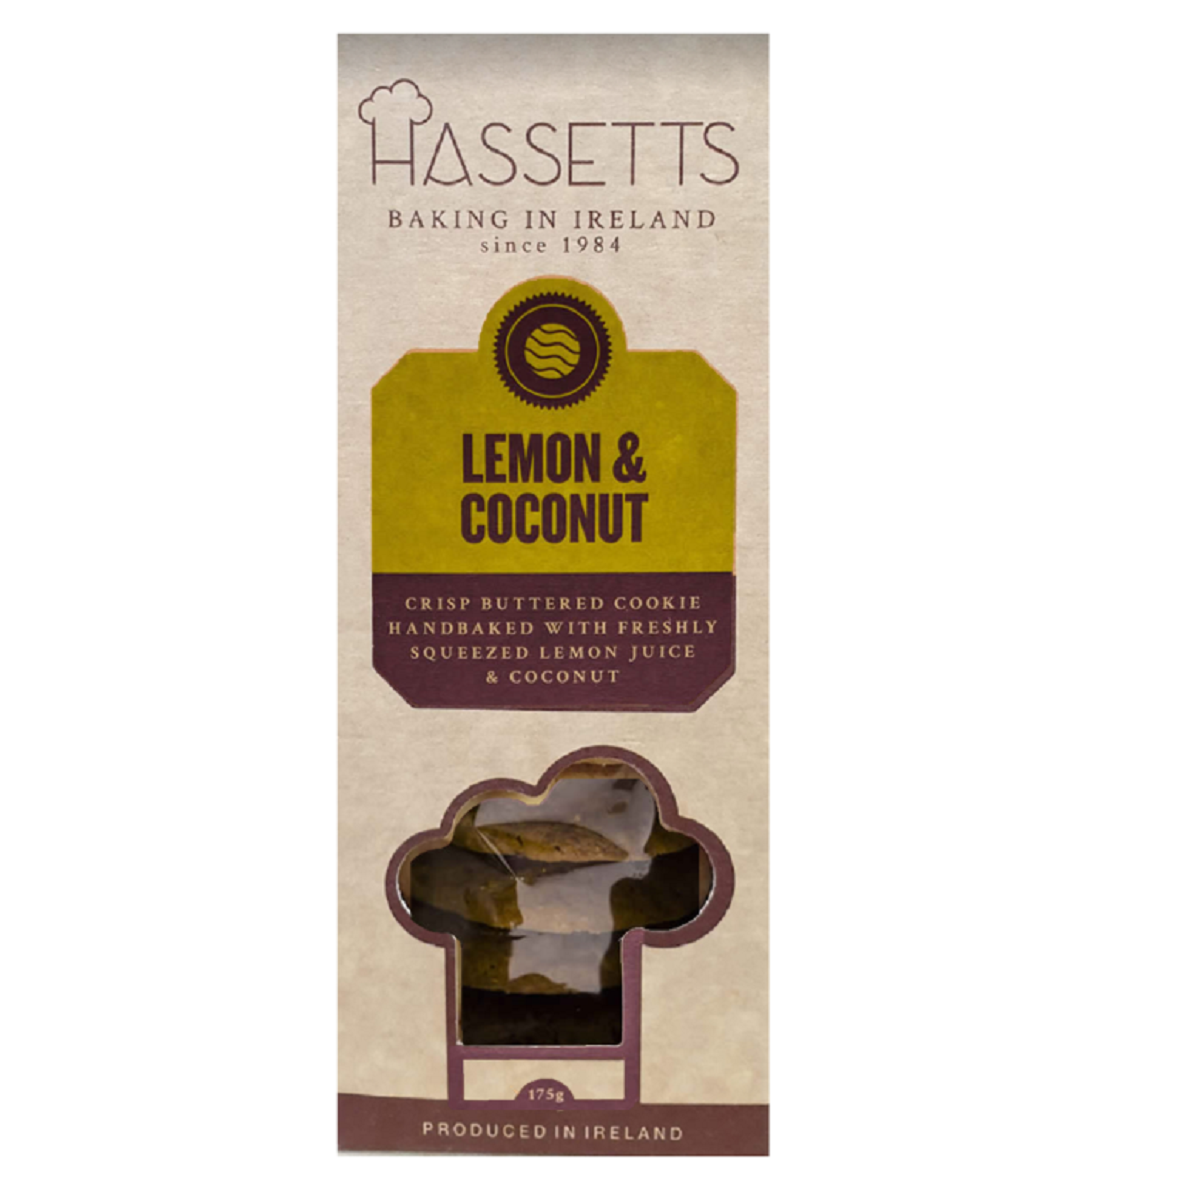 Hassetts Lemon &amp; Coconut Crisp Buttered Cookie 175g